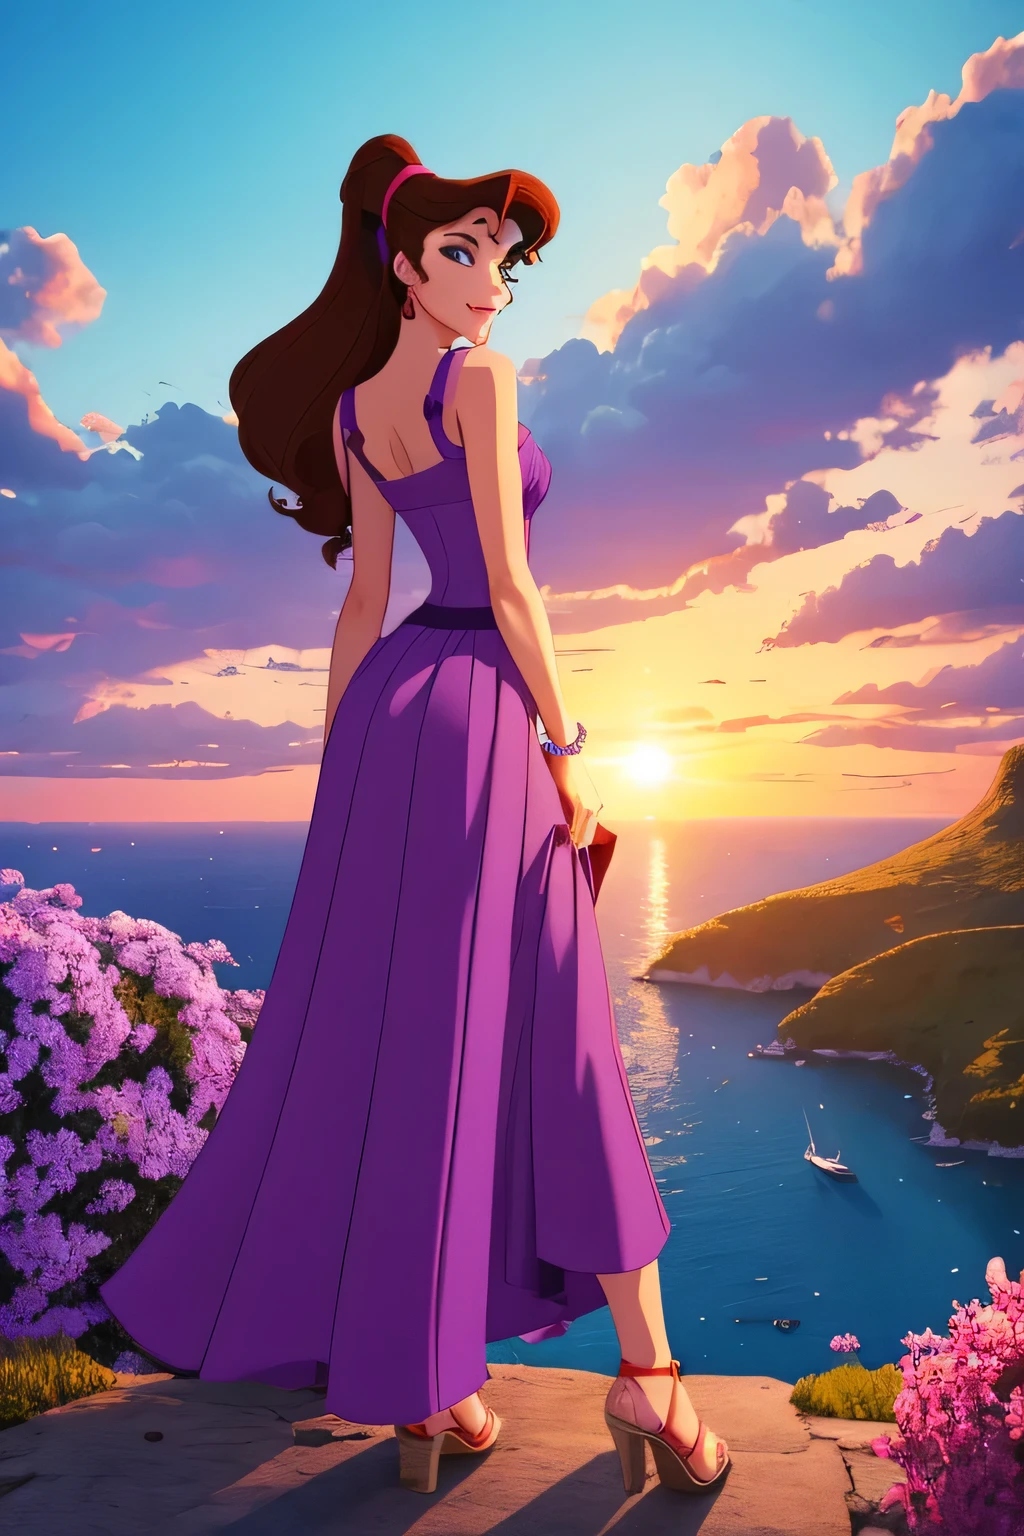 1 menina morena Megara, usando vestido grego longo roxo, Estilo de animação Disney, melhor qualidade, arte digital, 2D, no paraíso cercado por nuvens laranja